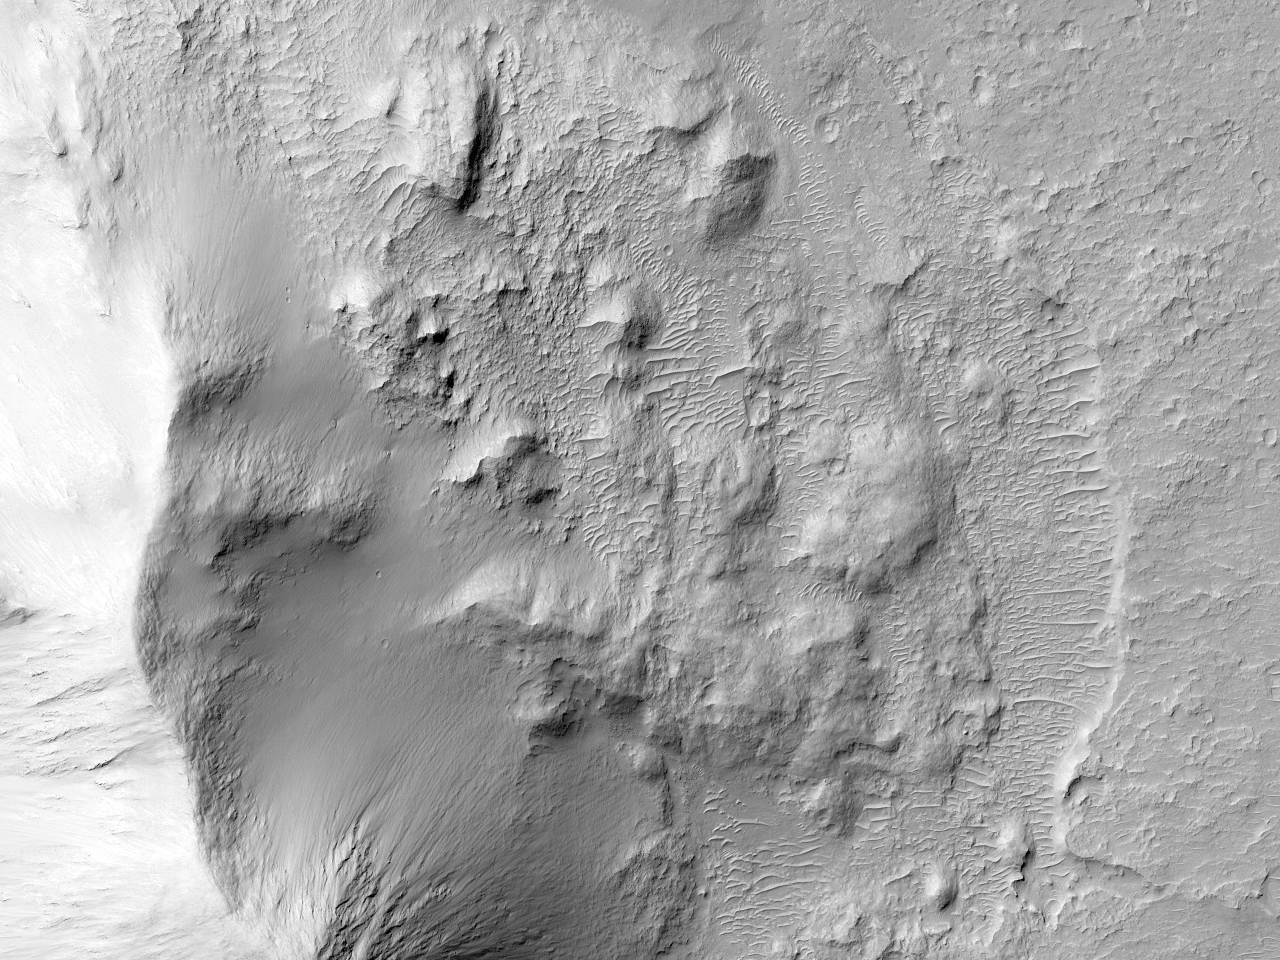 مواد فرسایش یافته در نزدیکی دهانه « رابرت شارپ » (Robert Sharp Crater)